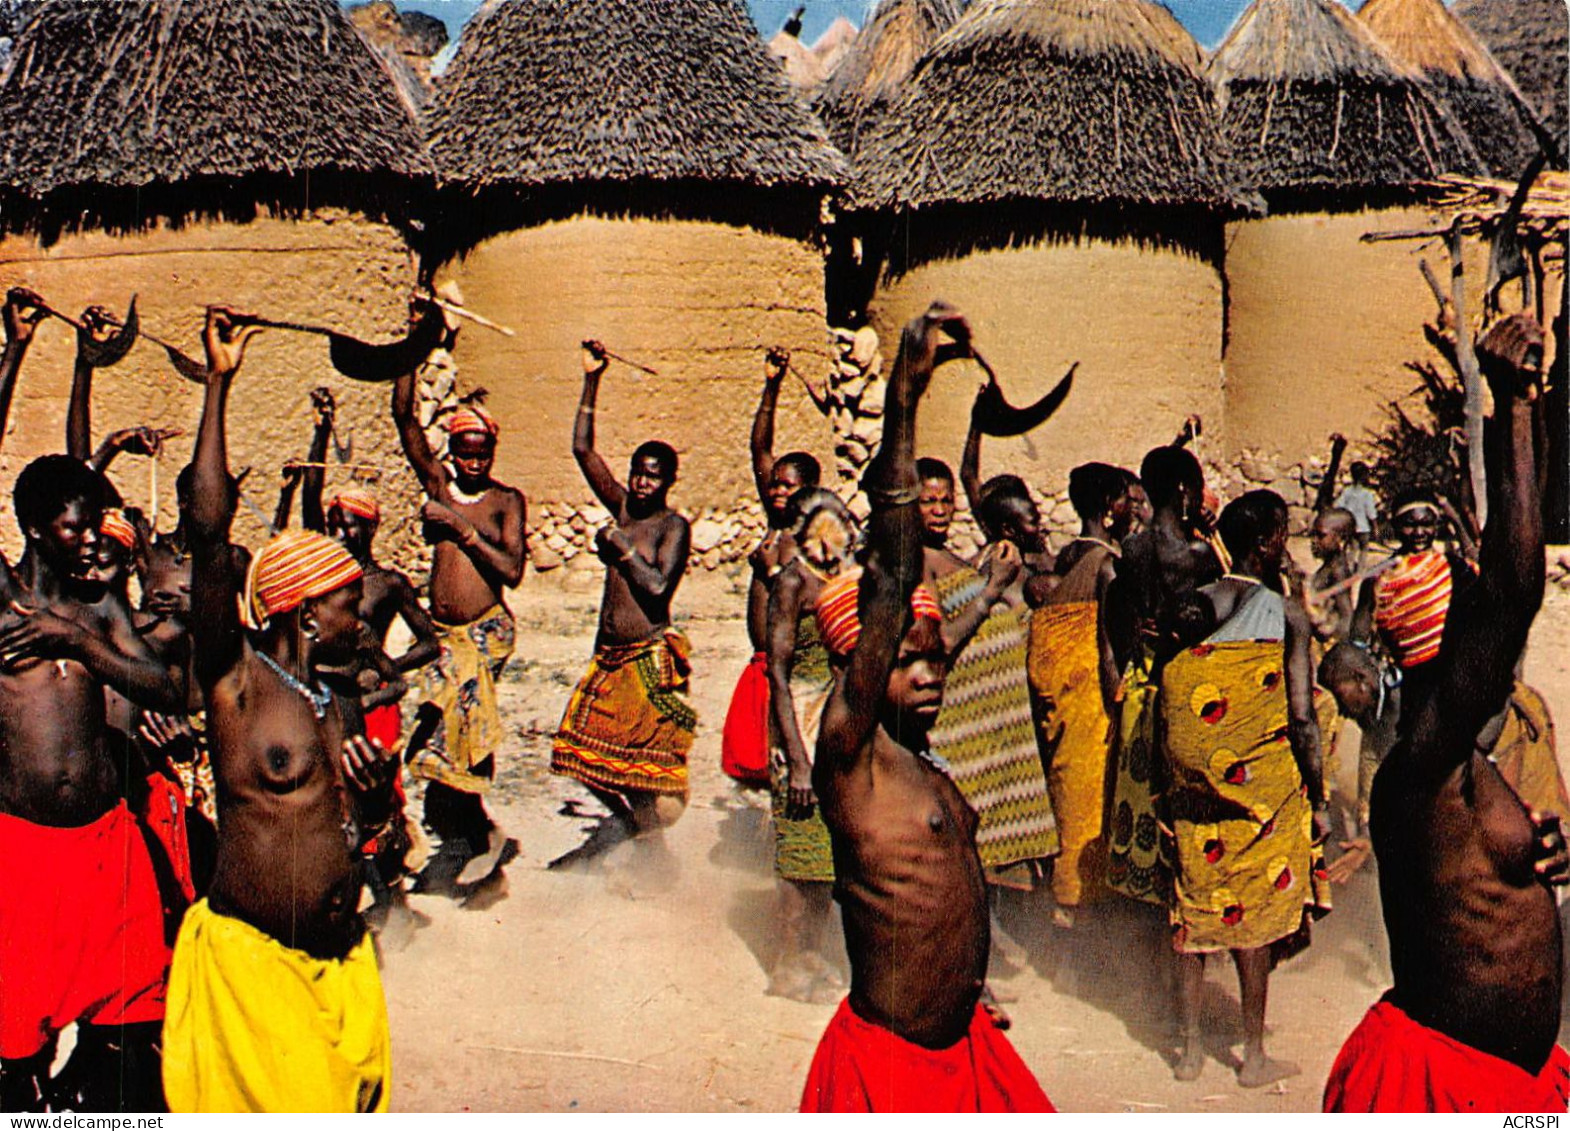 CAMEROUN OUDJILLA Danse De La Recolte (scan Recto Verso)  OO 0959 - Cameroon